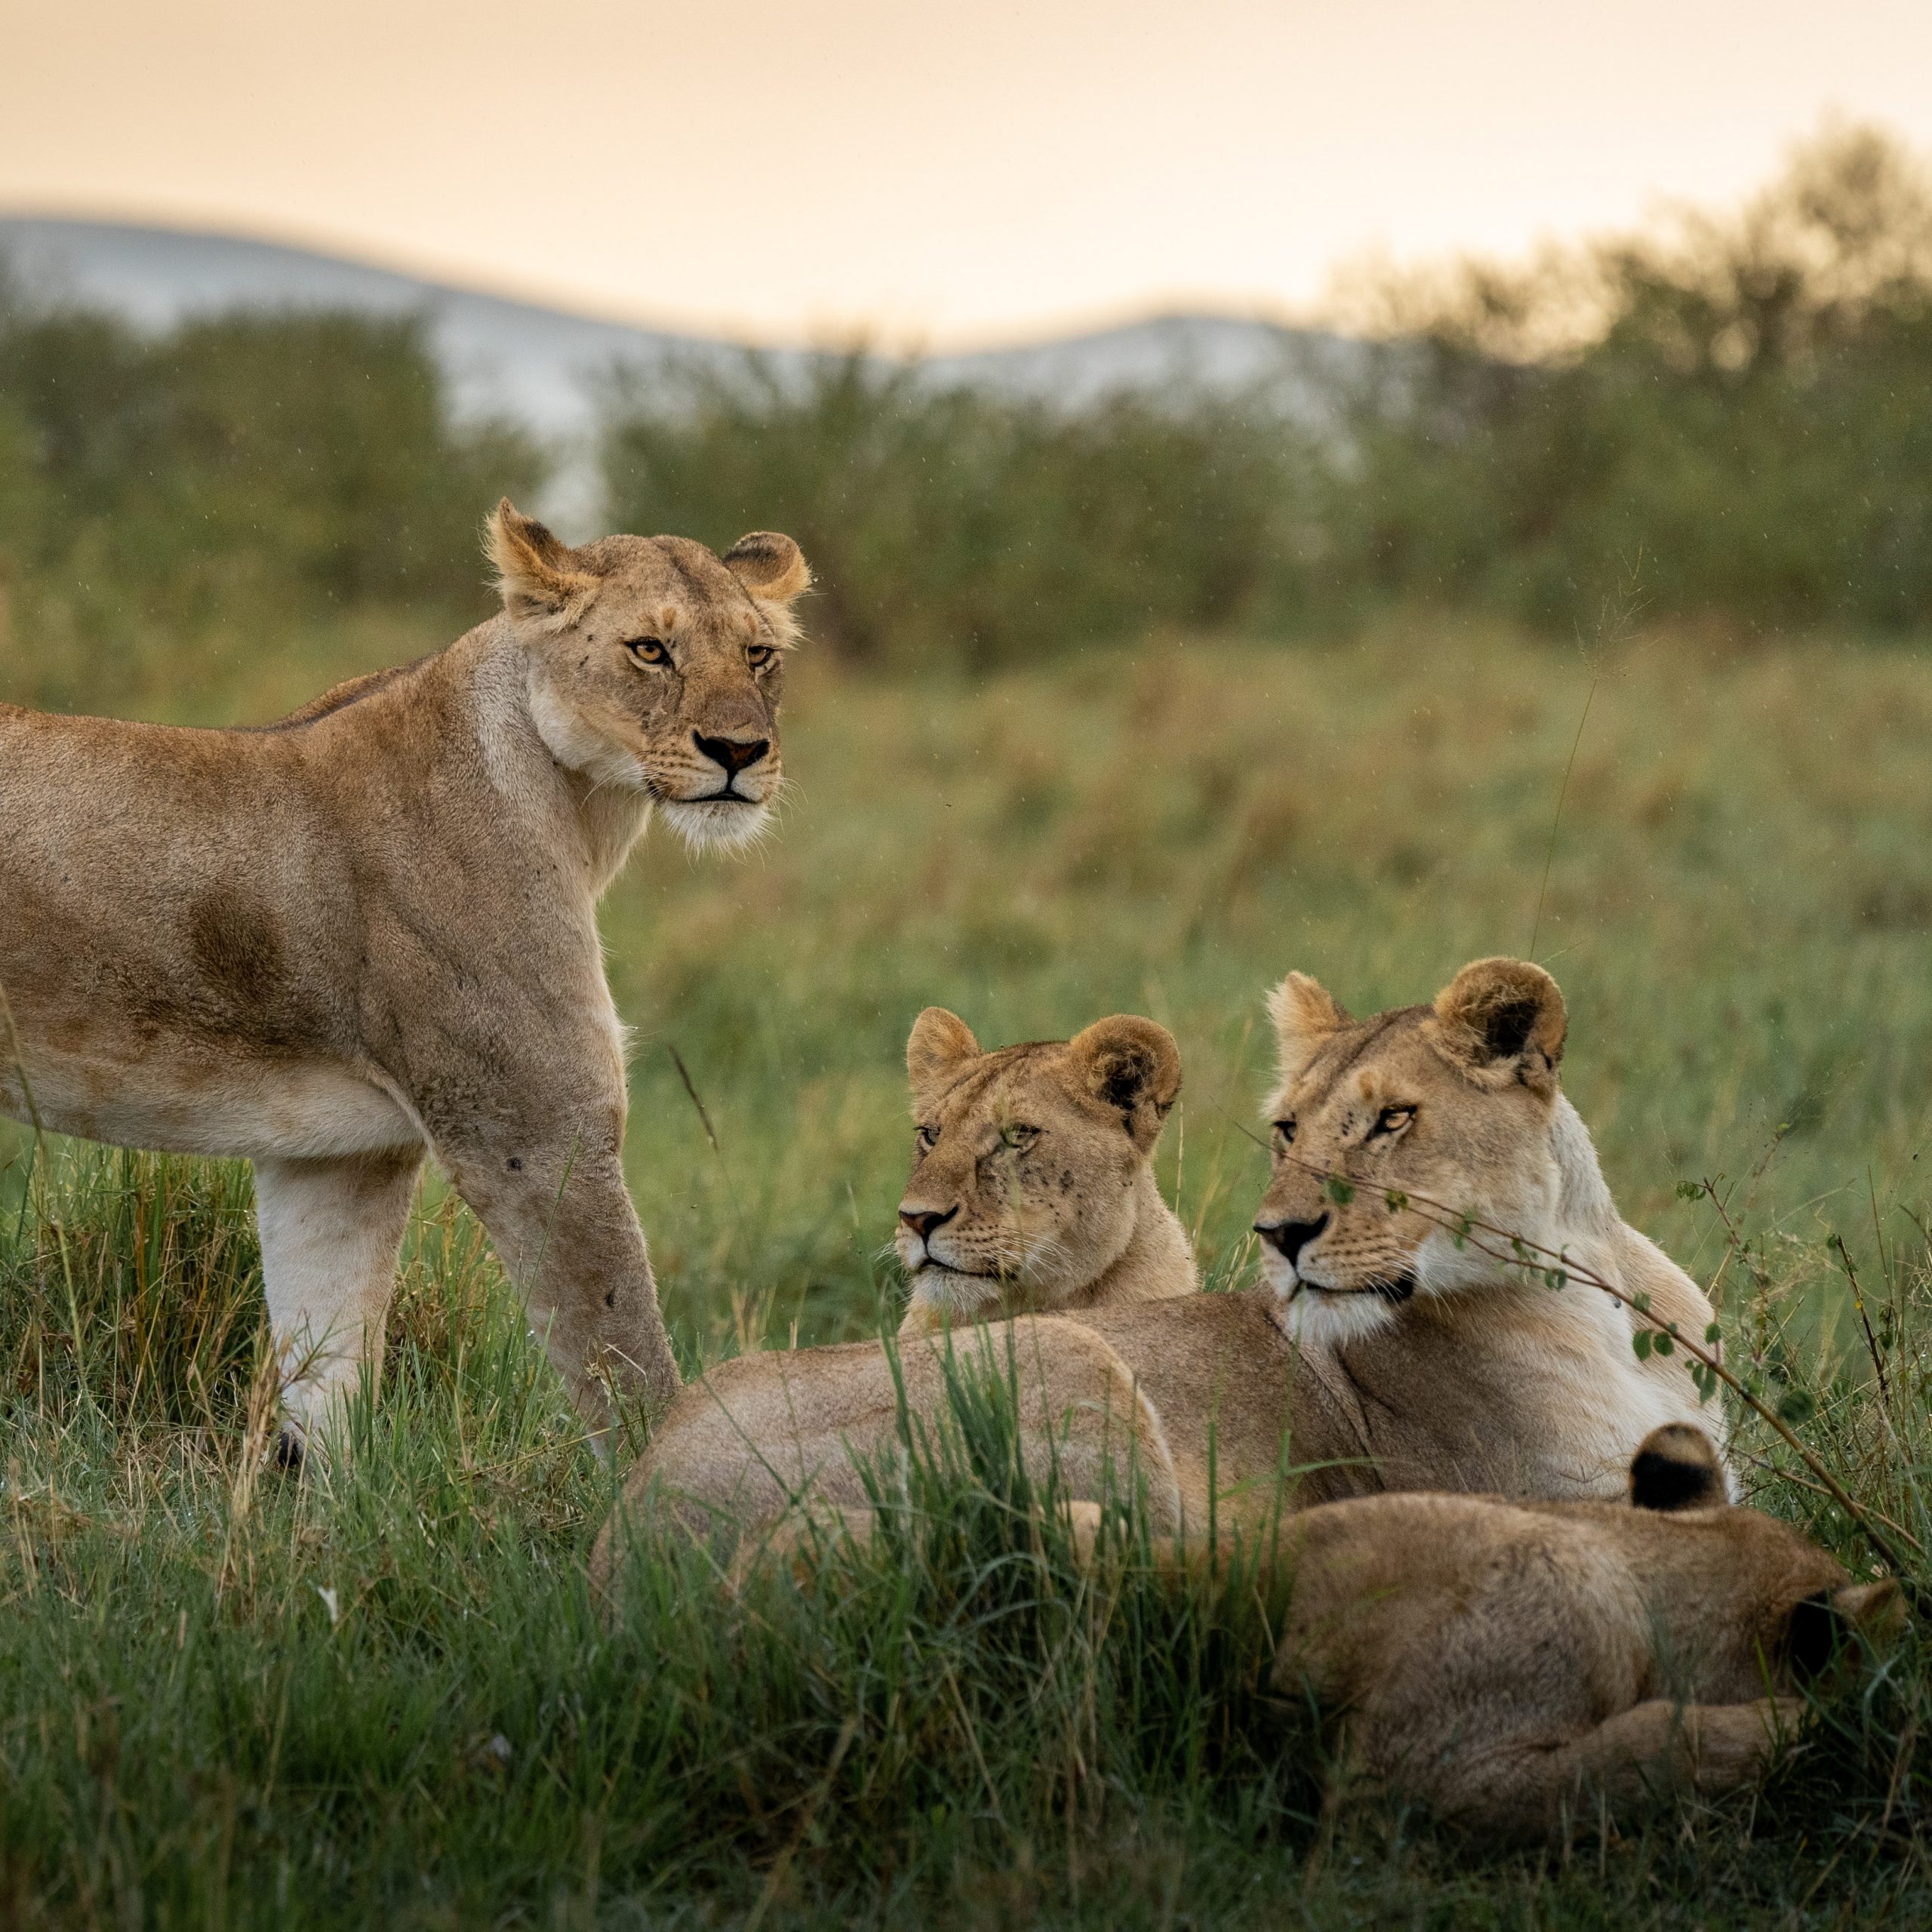 Lions at Masai Mara National Reserve, Kenya